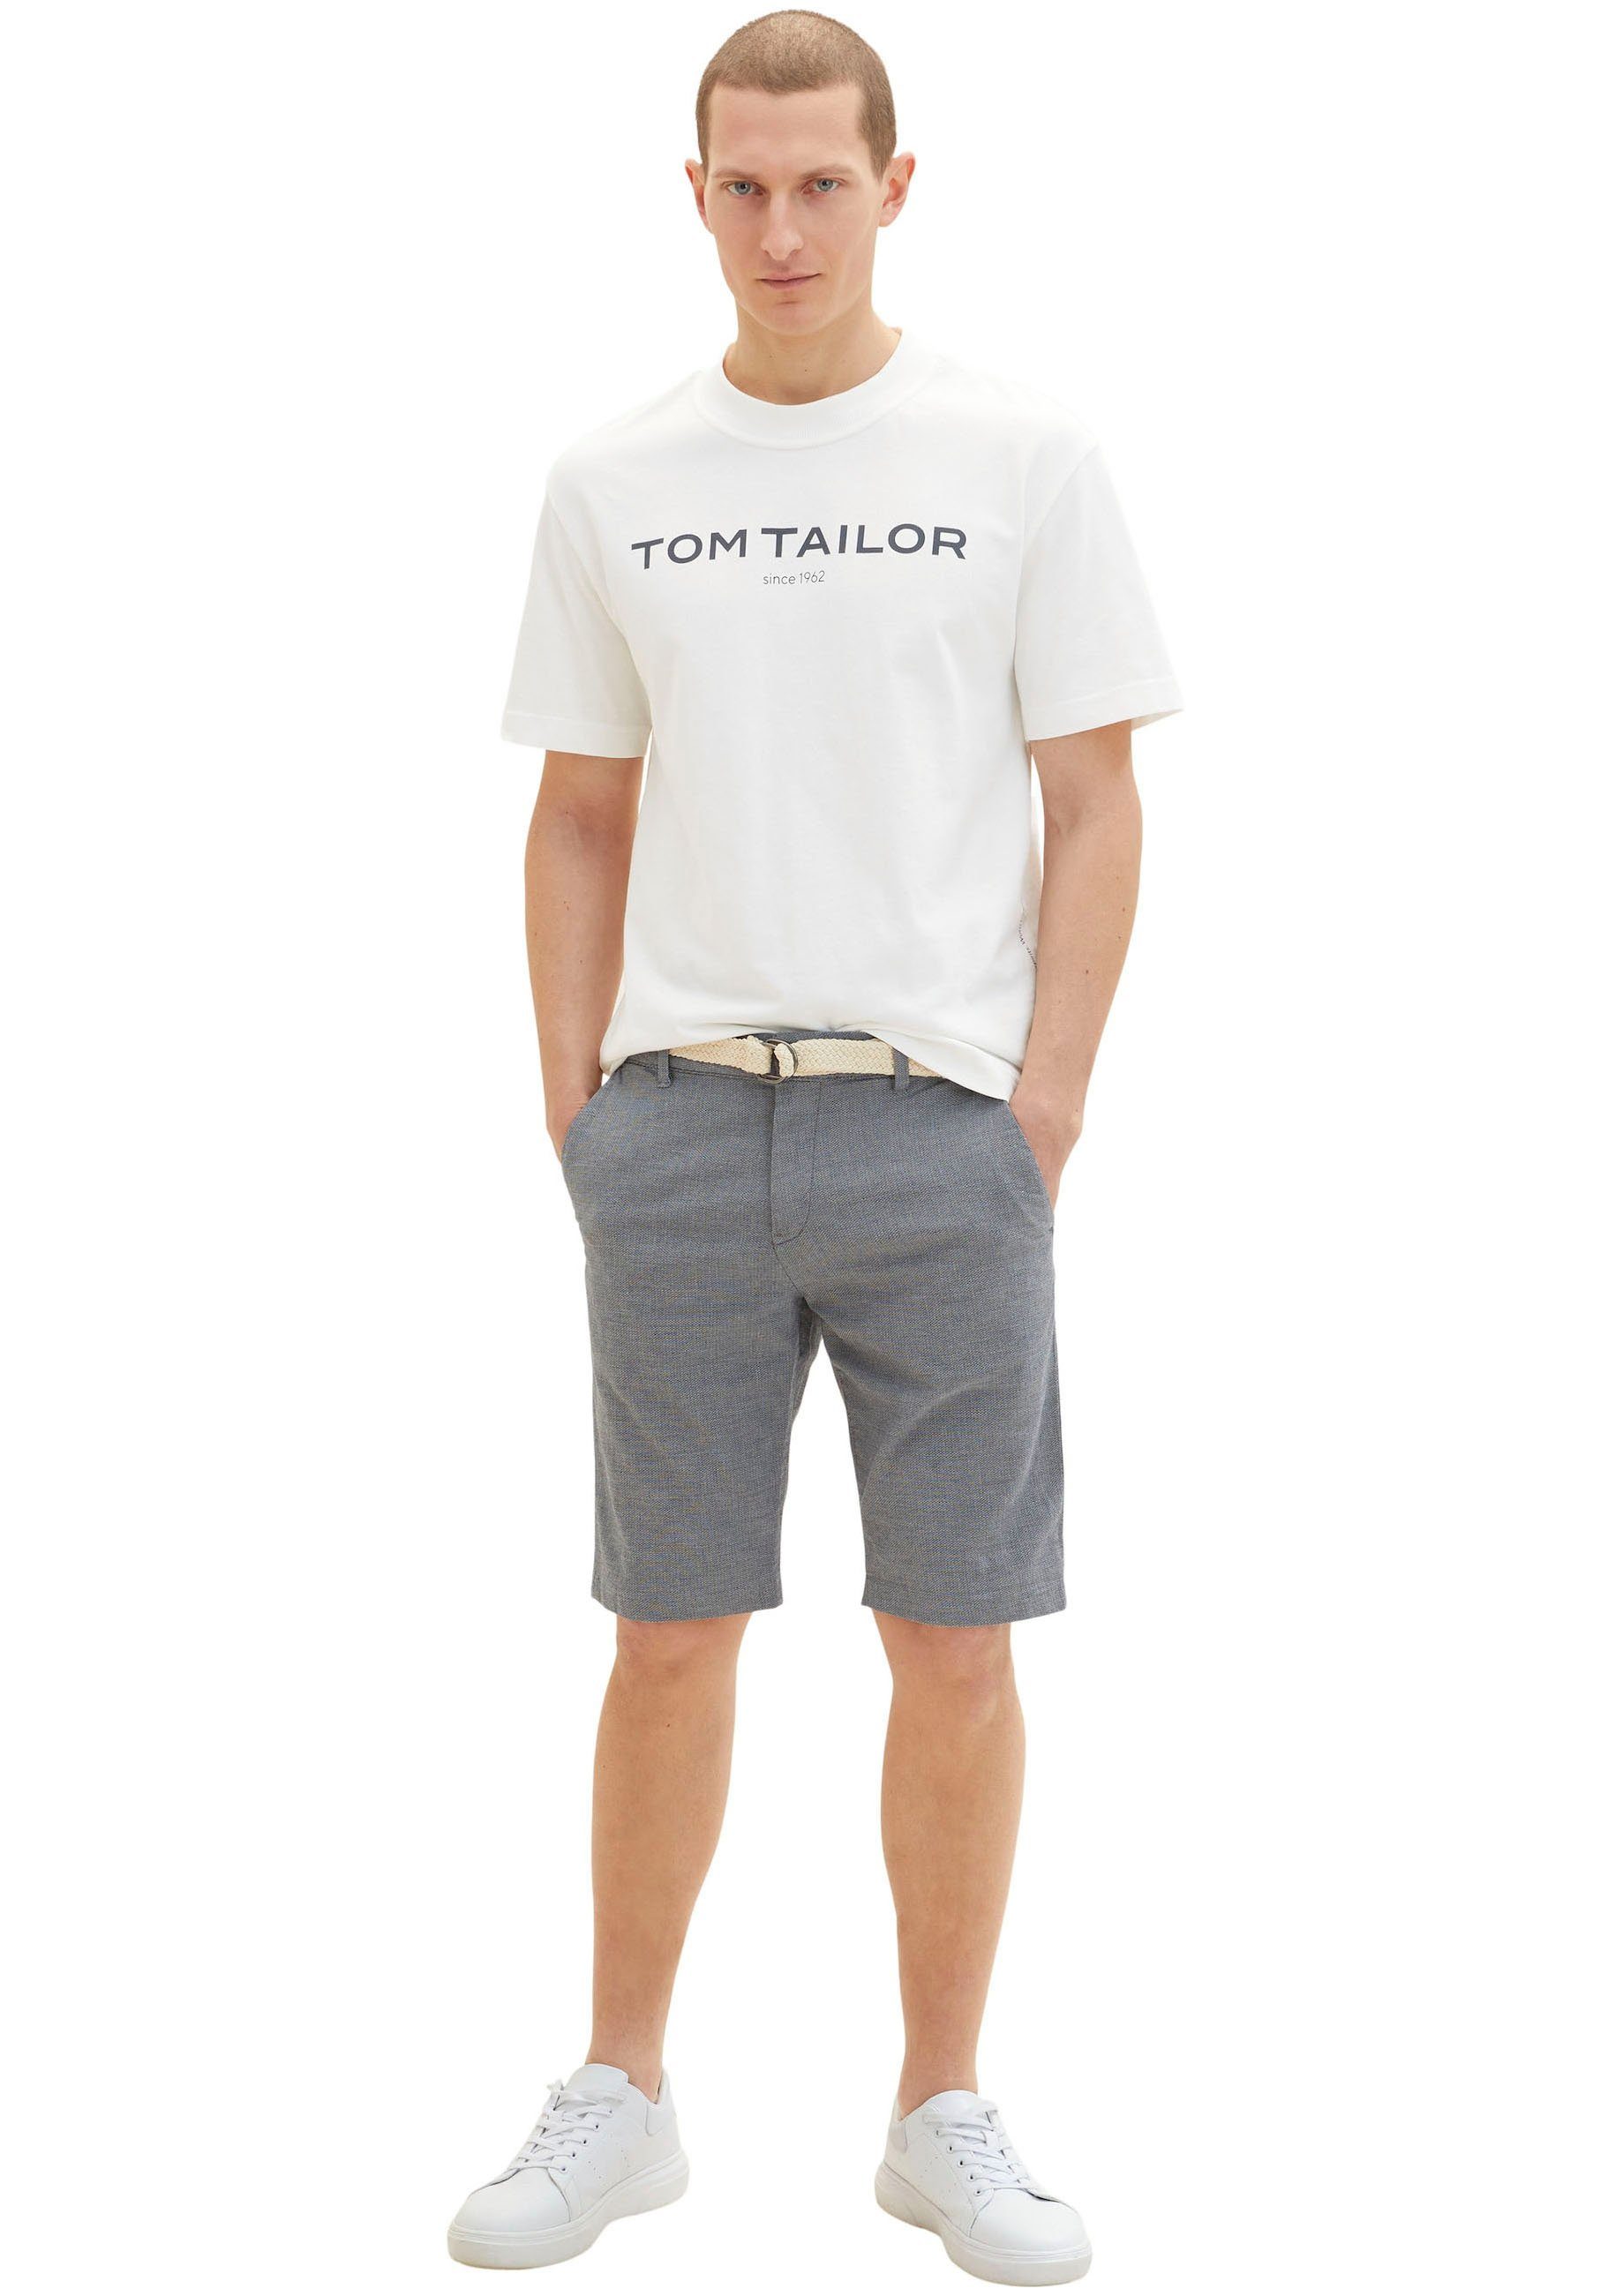 TOM TAILOR Shorts white navy